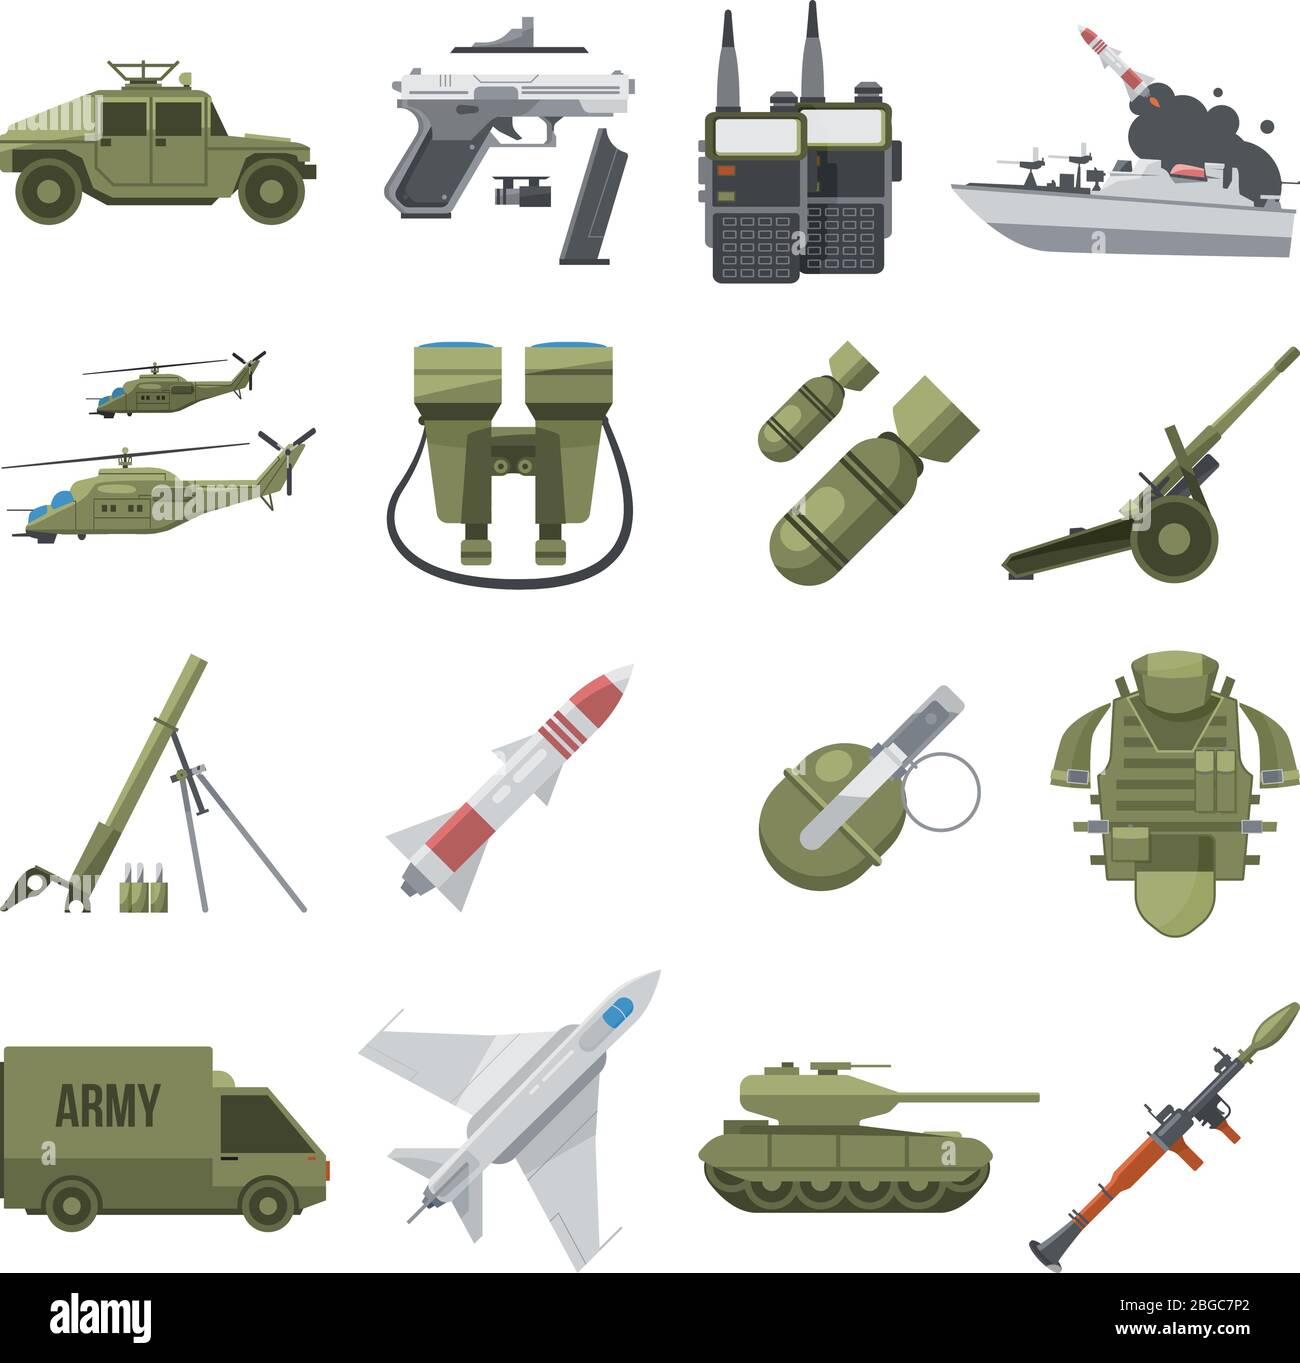 Set di icone di diverse armi militari. Attrezzature militari e di polizia. Immagini vettoriali in stile piatto Illustrazione Vettoriale